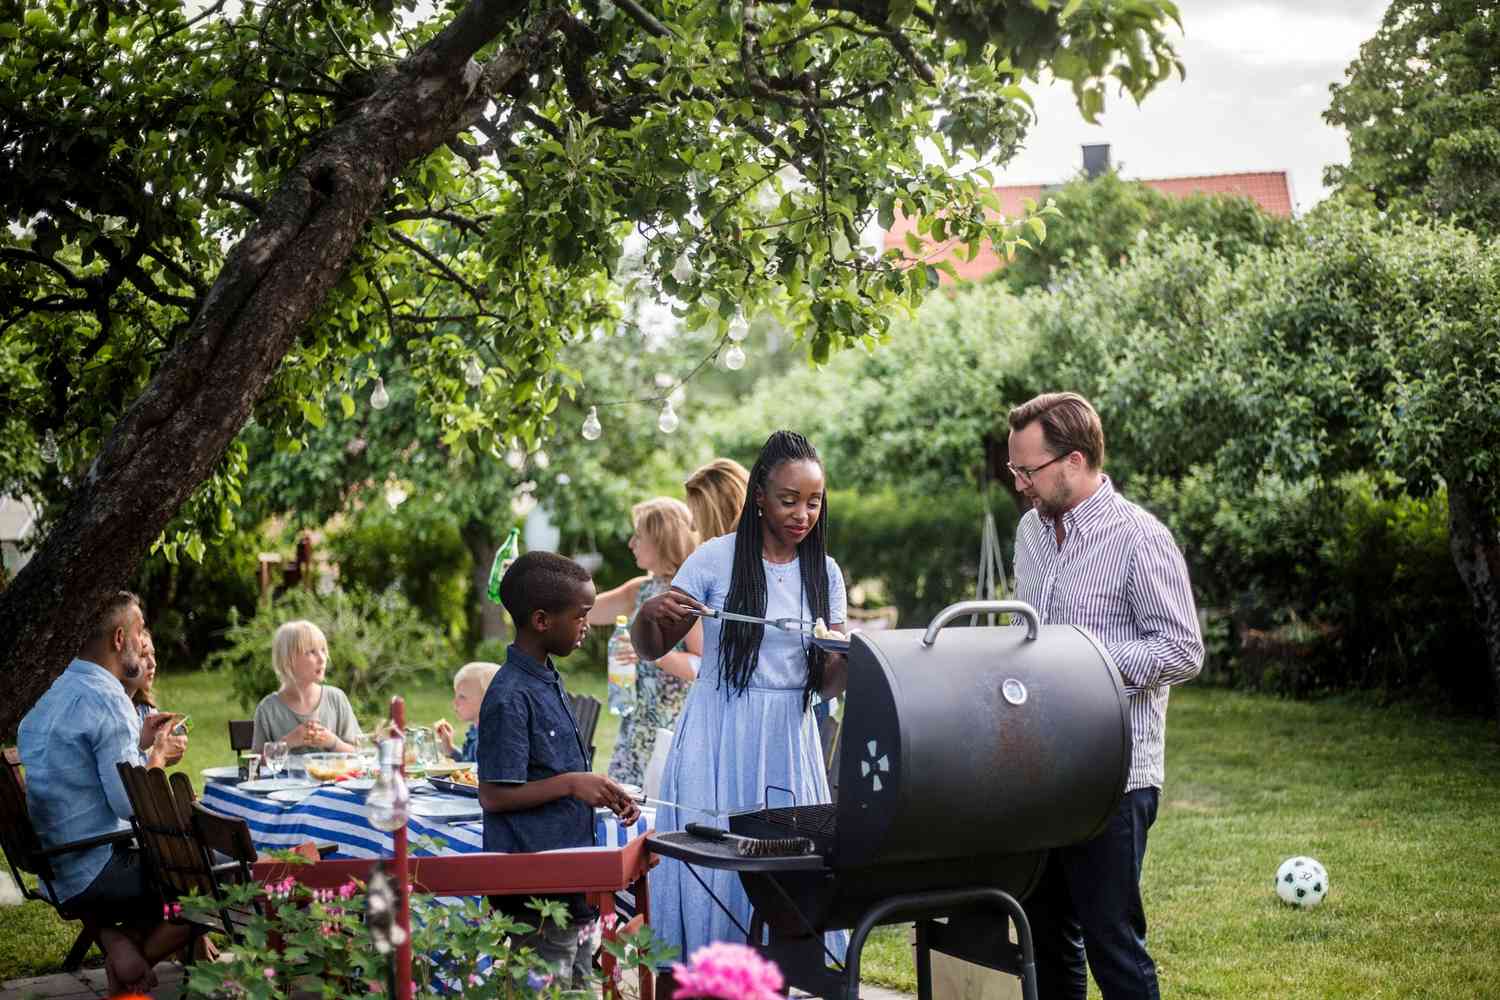 people enjoying an outdoor summer BBQ